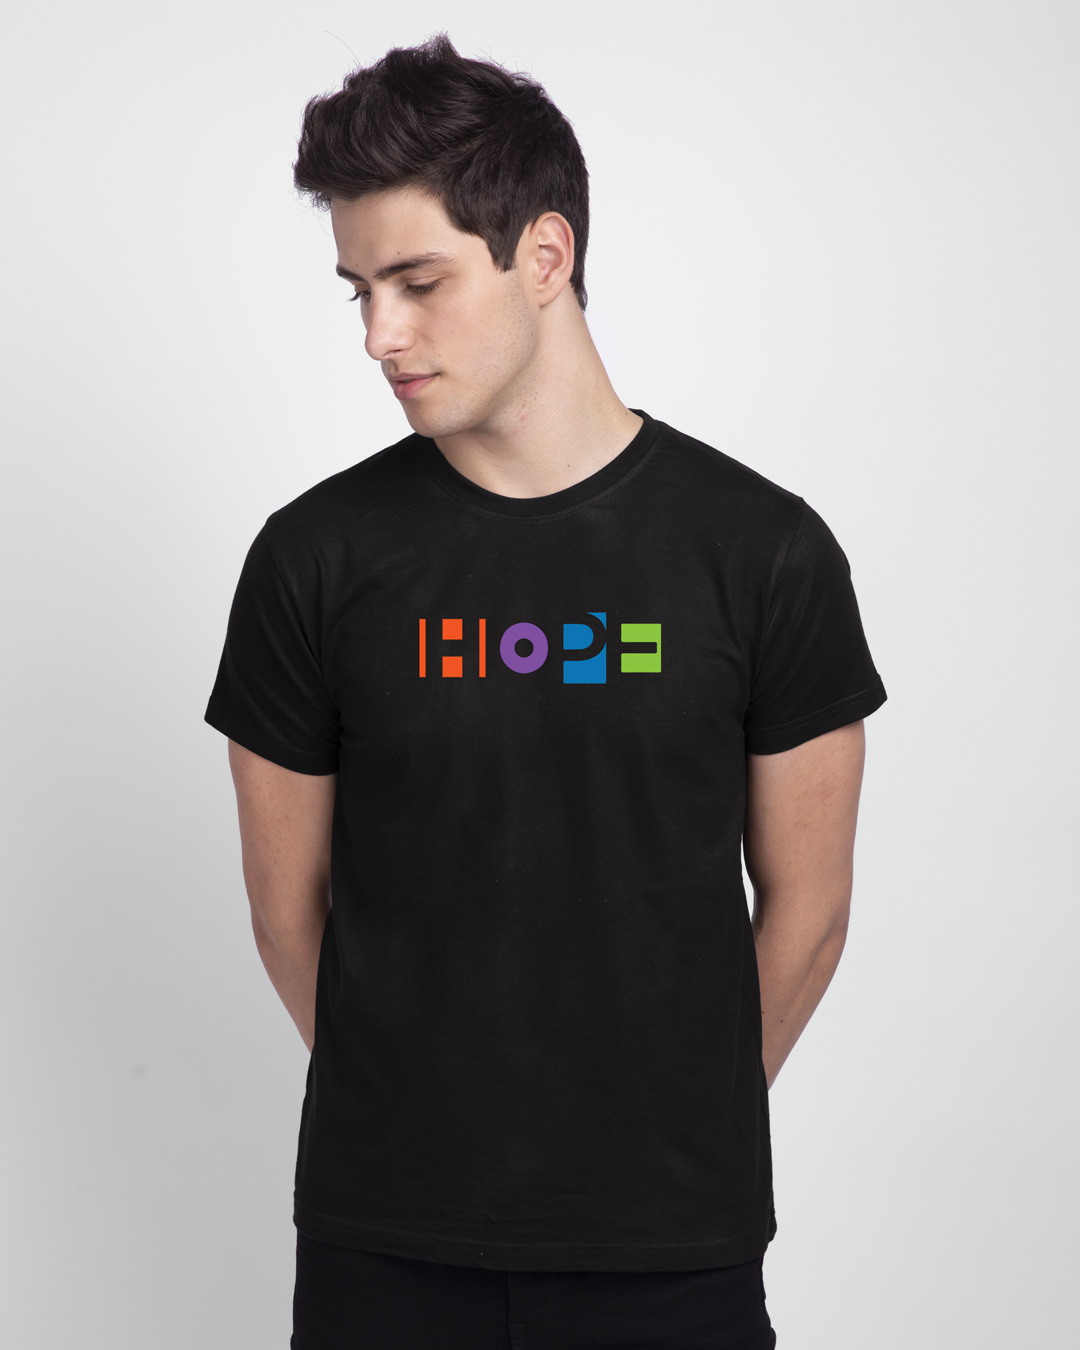 Buy Men's Black Hope T-shirt Online at Bewakoof